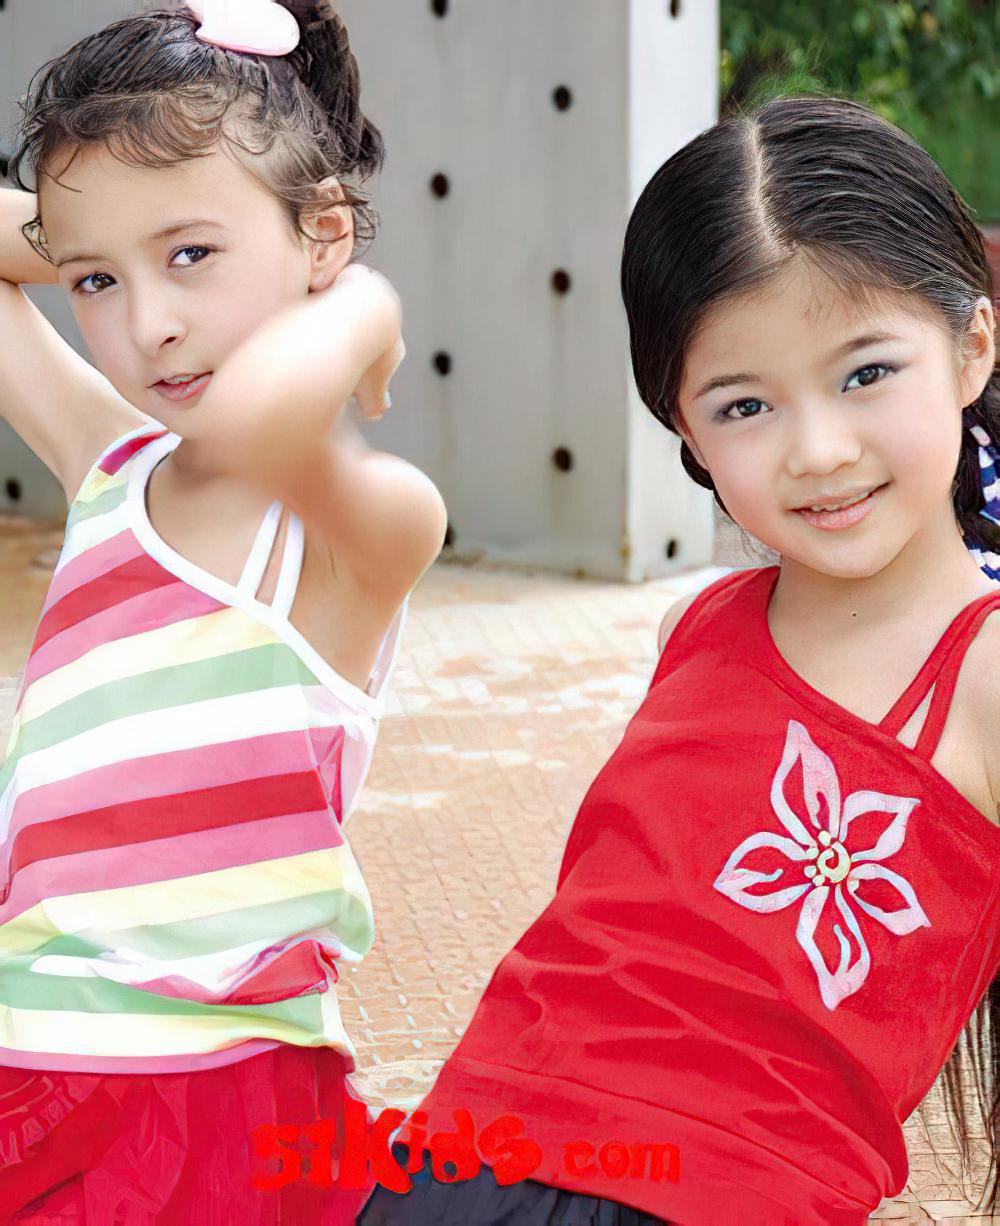 上海国际少年儿童服装及用品博览会